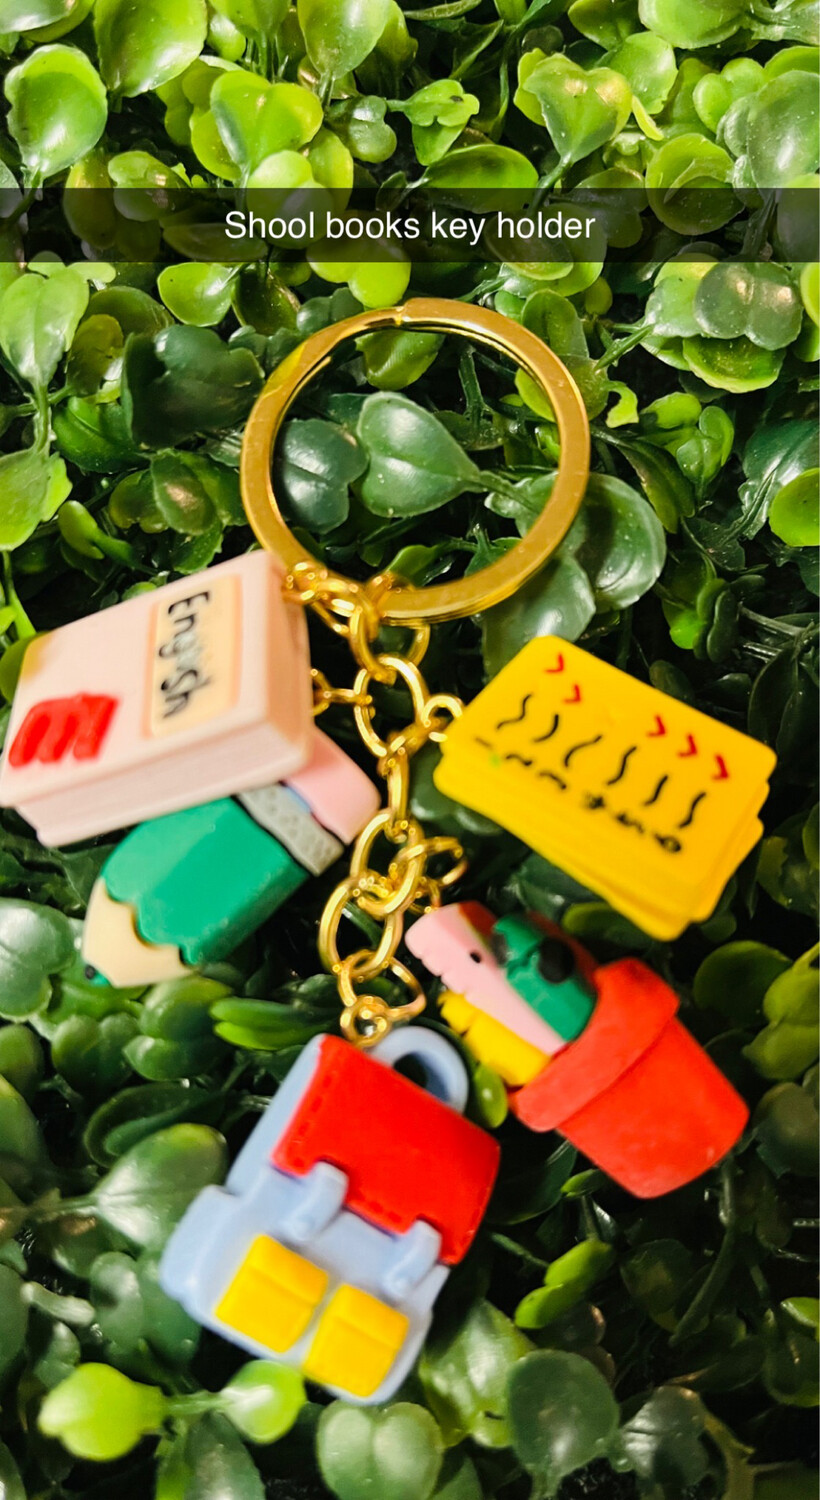 Key holder